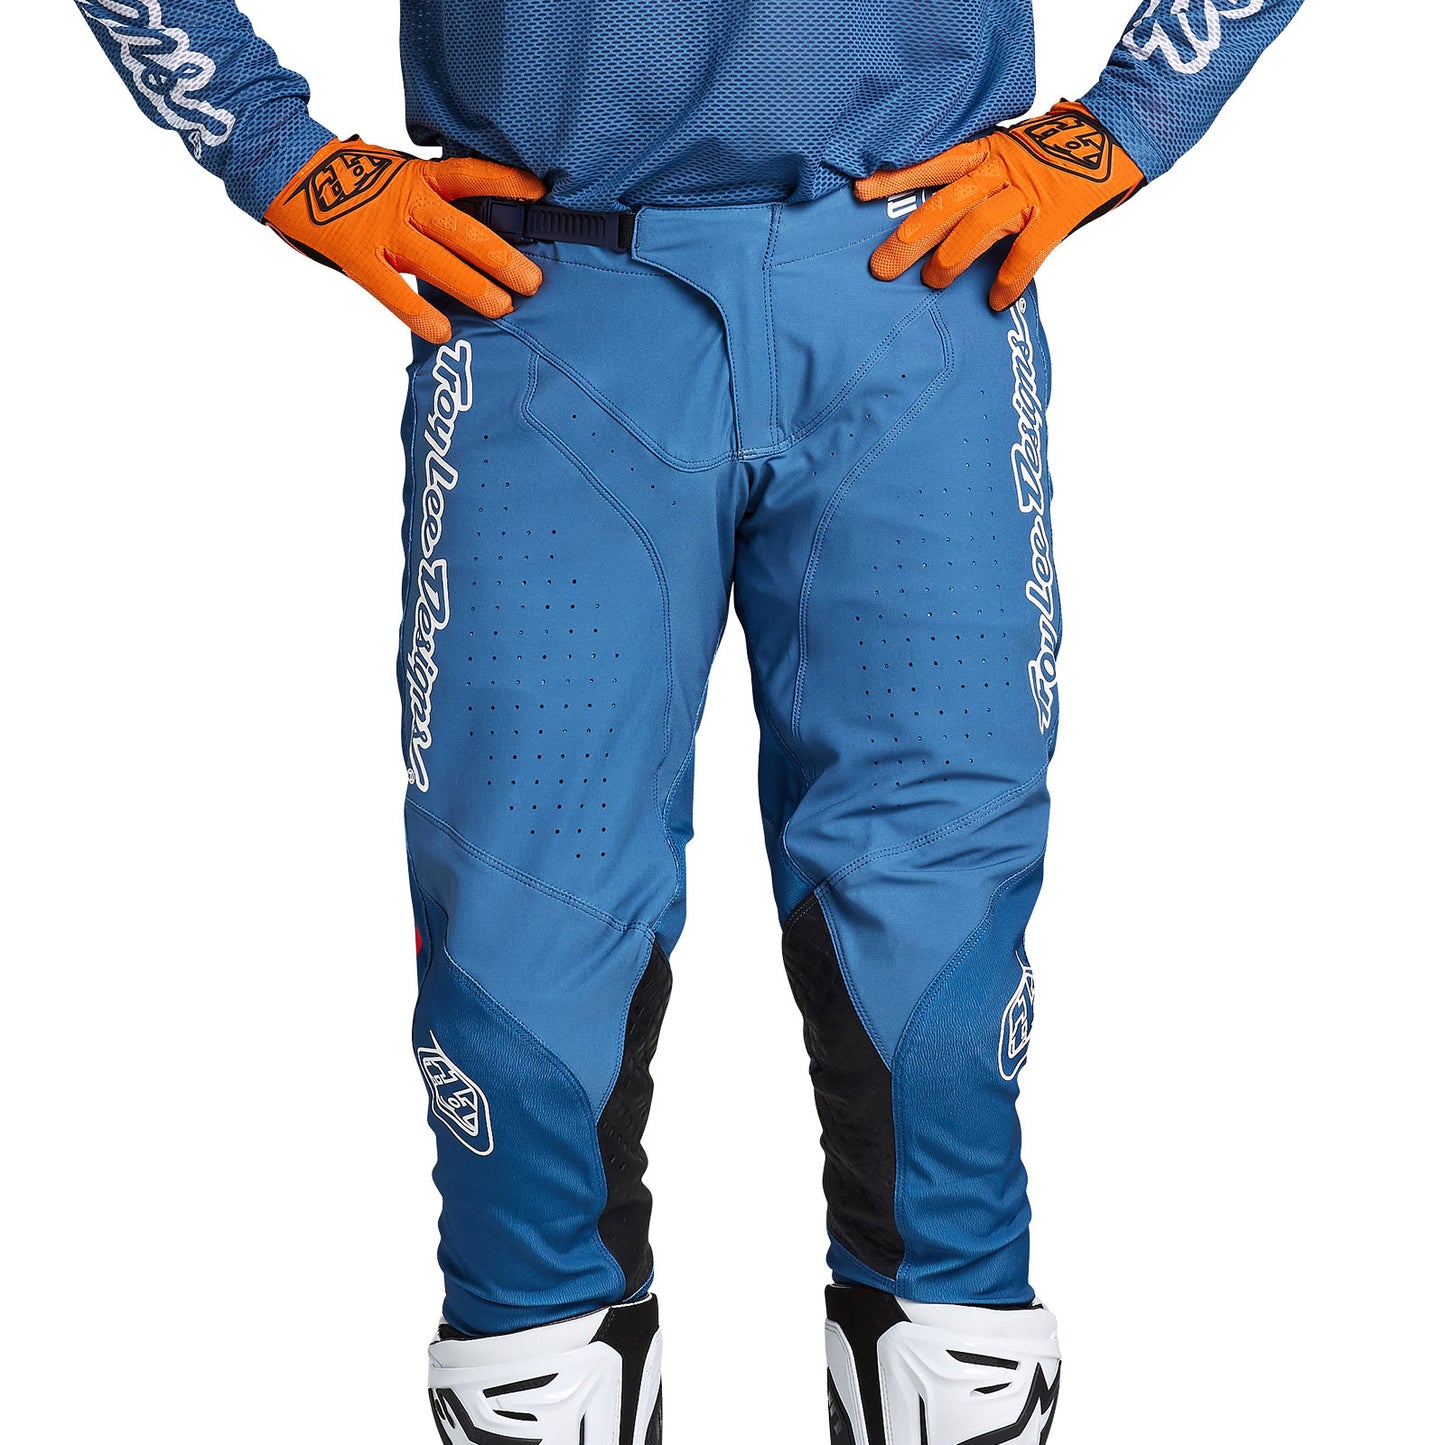 Pantalon SE Pro épinglé bleu